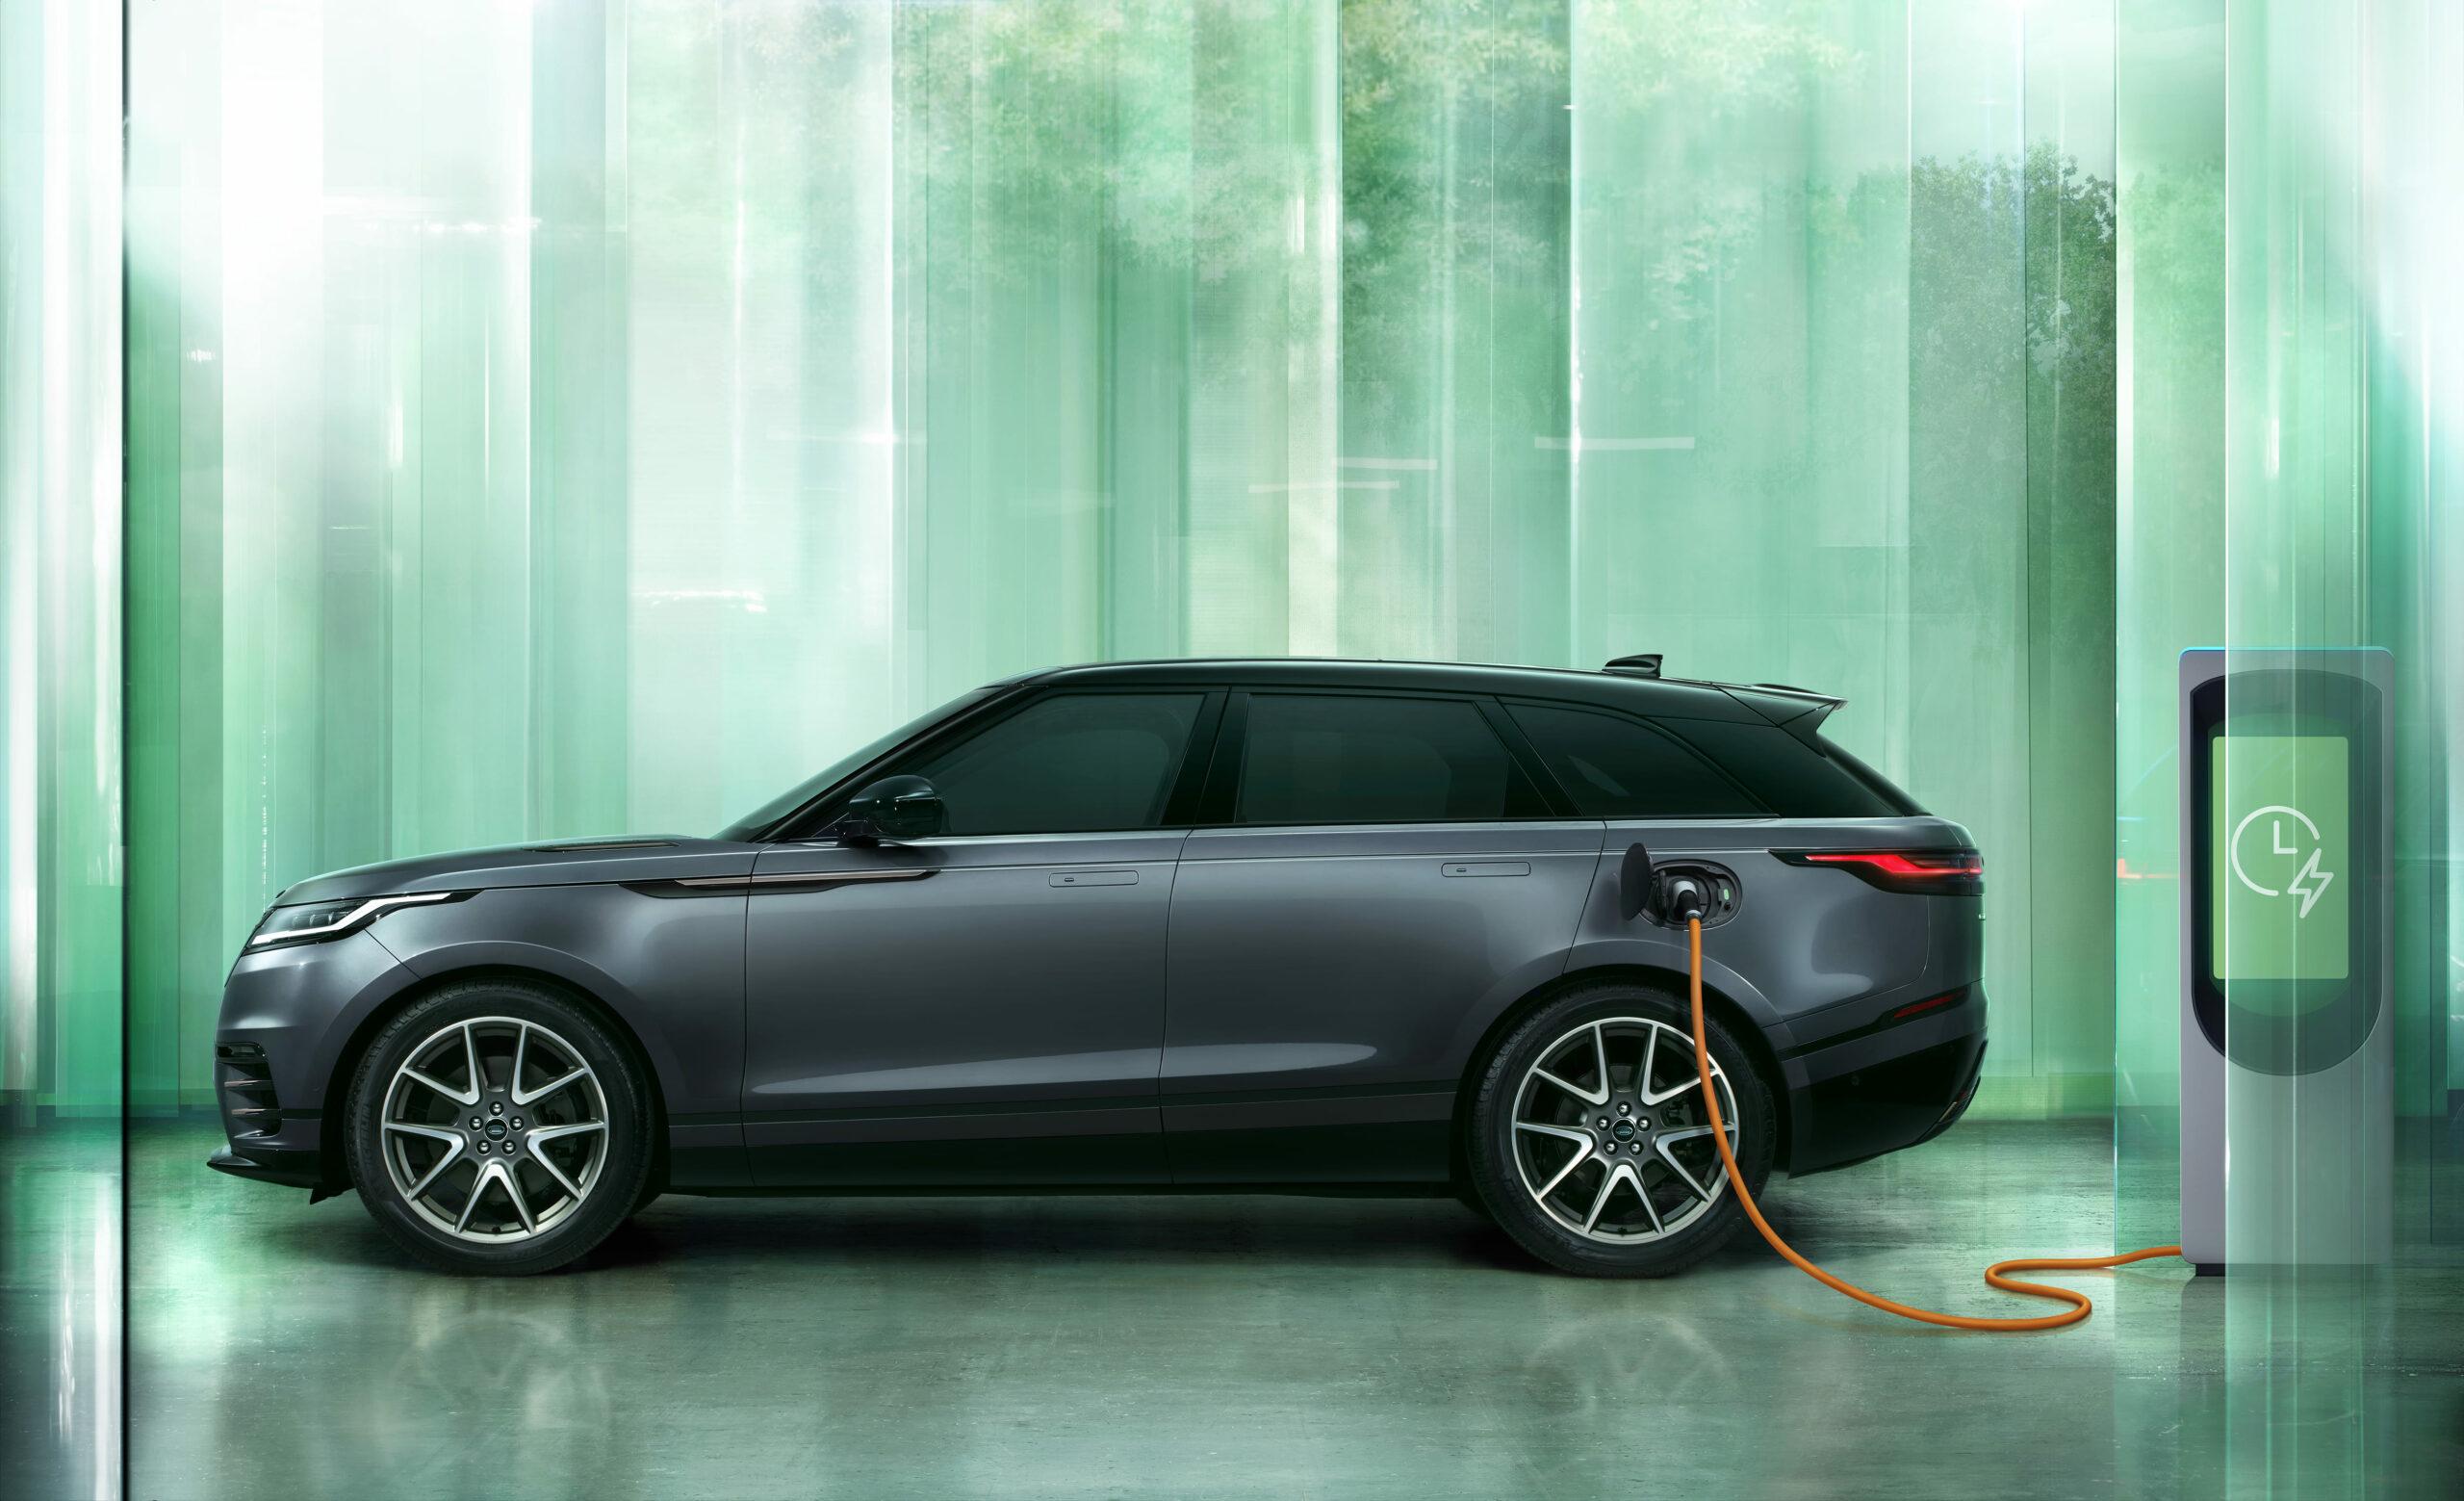 Lujosa perfección: Descubre el nuevo Range Rover Velar